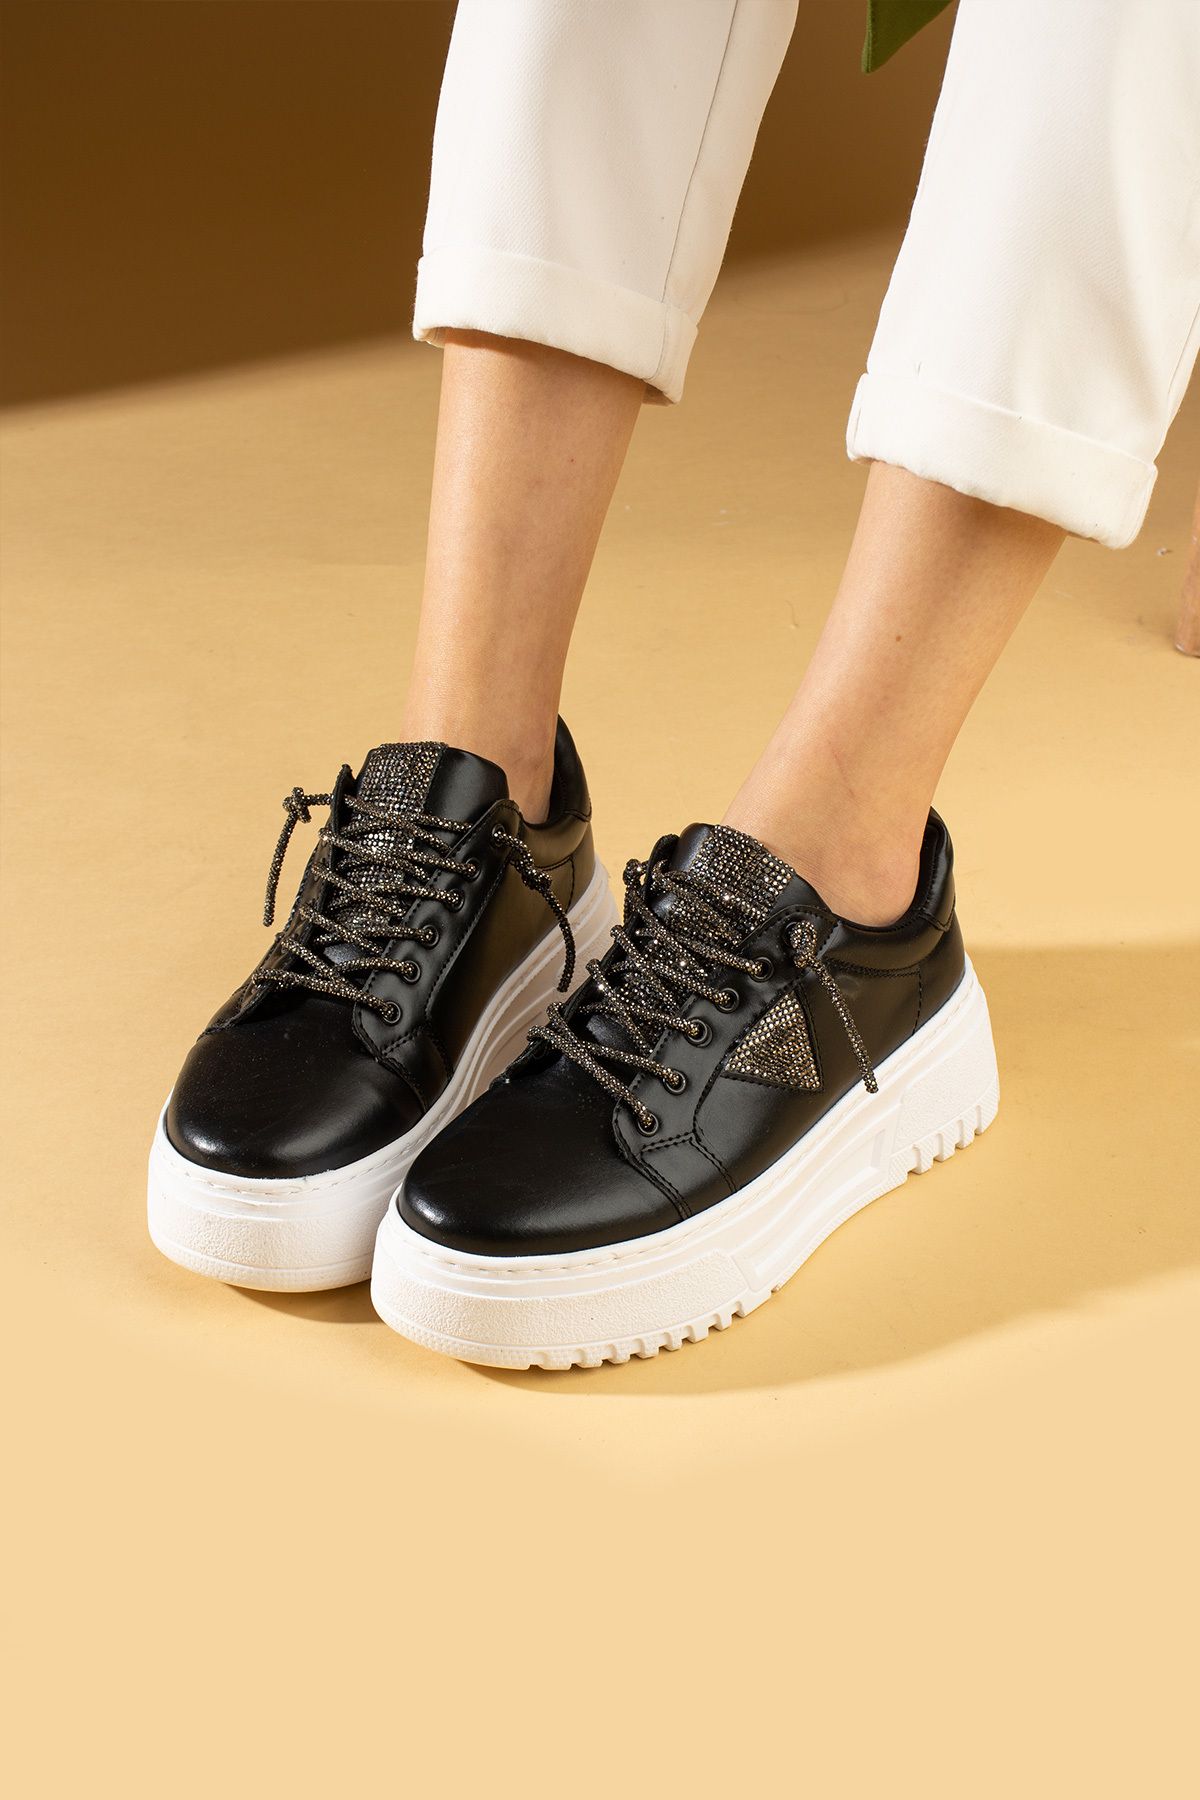 Pembe Potin Kadın Siyah Beyaz Poli Rahat Taban Bağcıklı Sneaker Ayakkabı